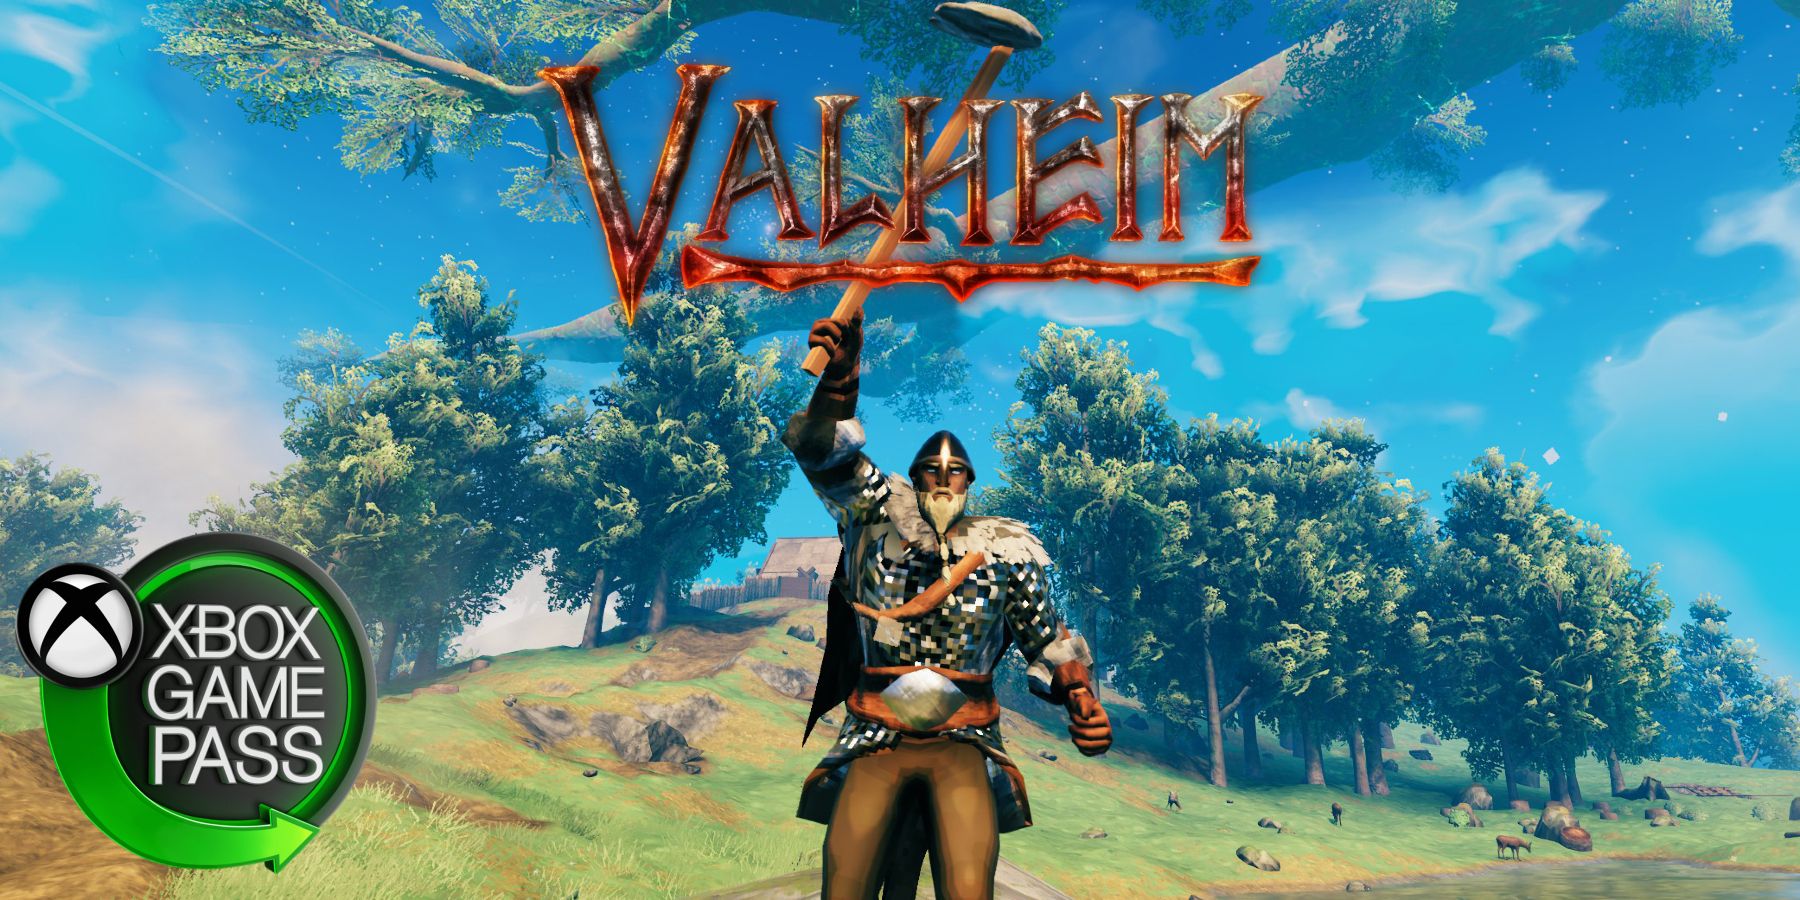 Valheim se aventura no console com a chegada no Xbox Game Pass